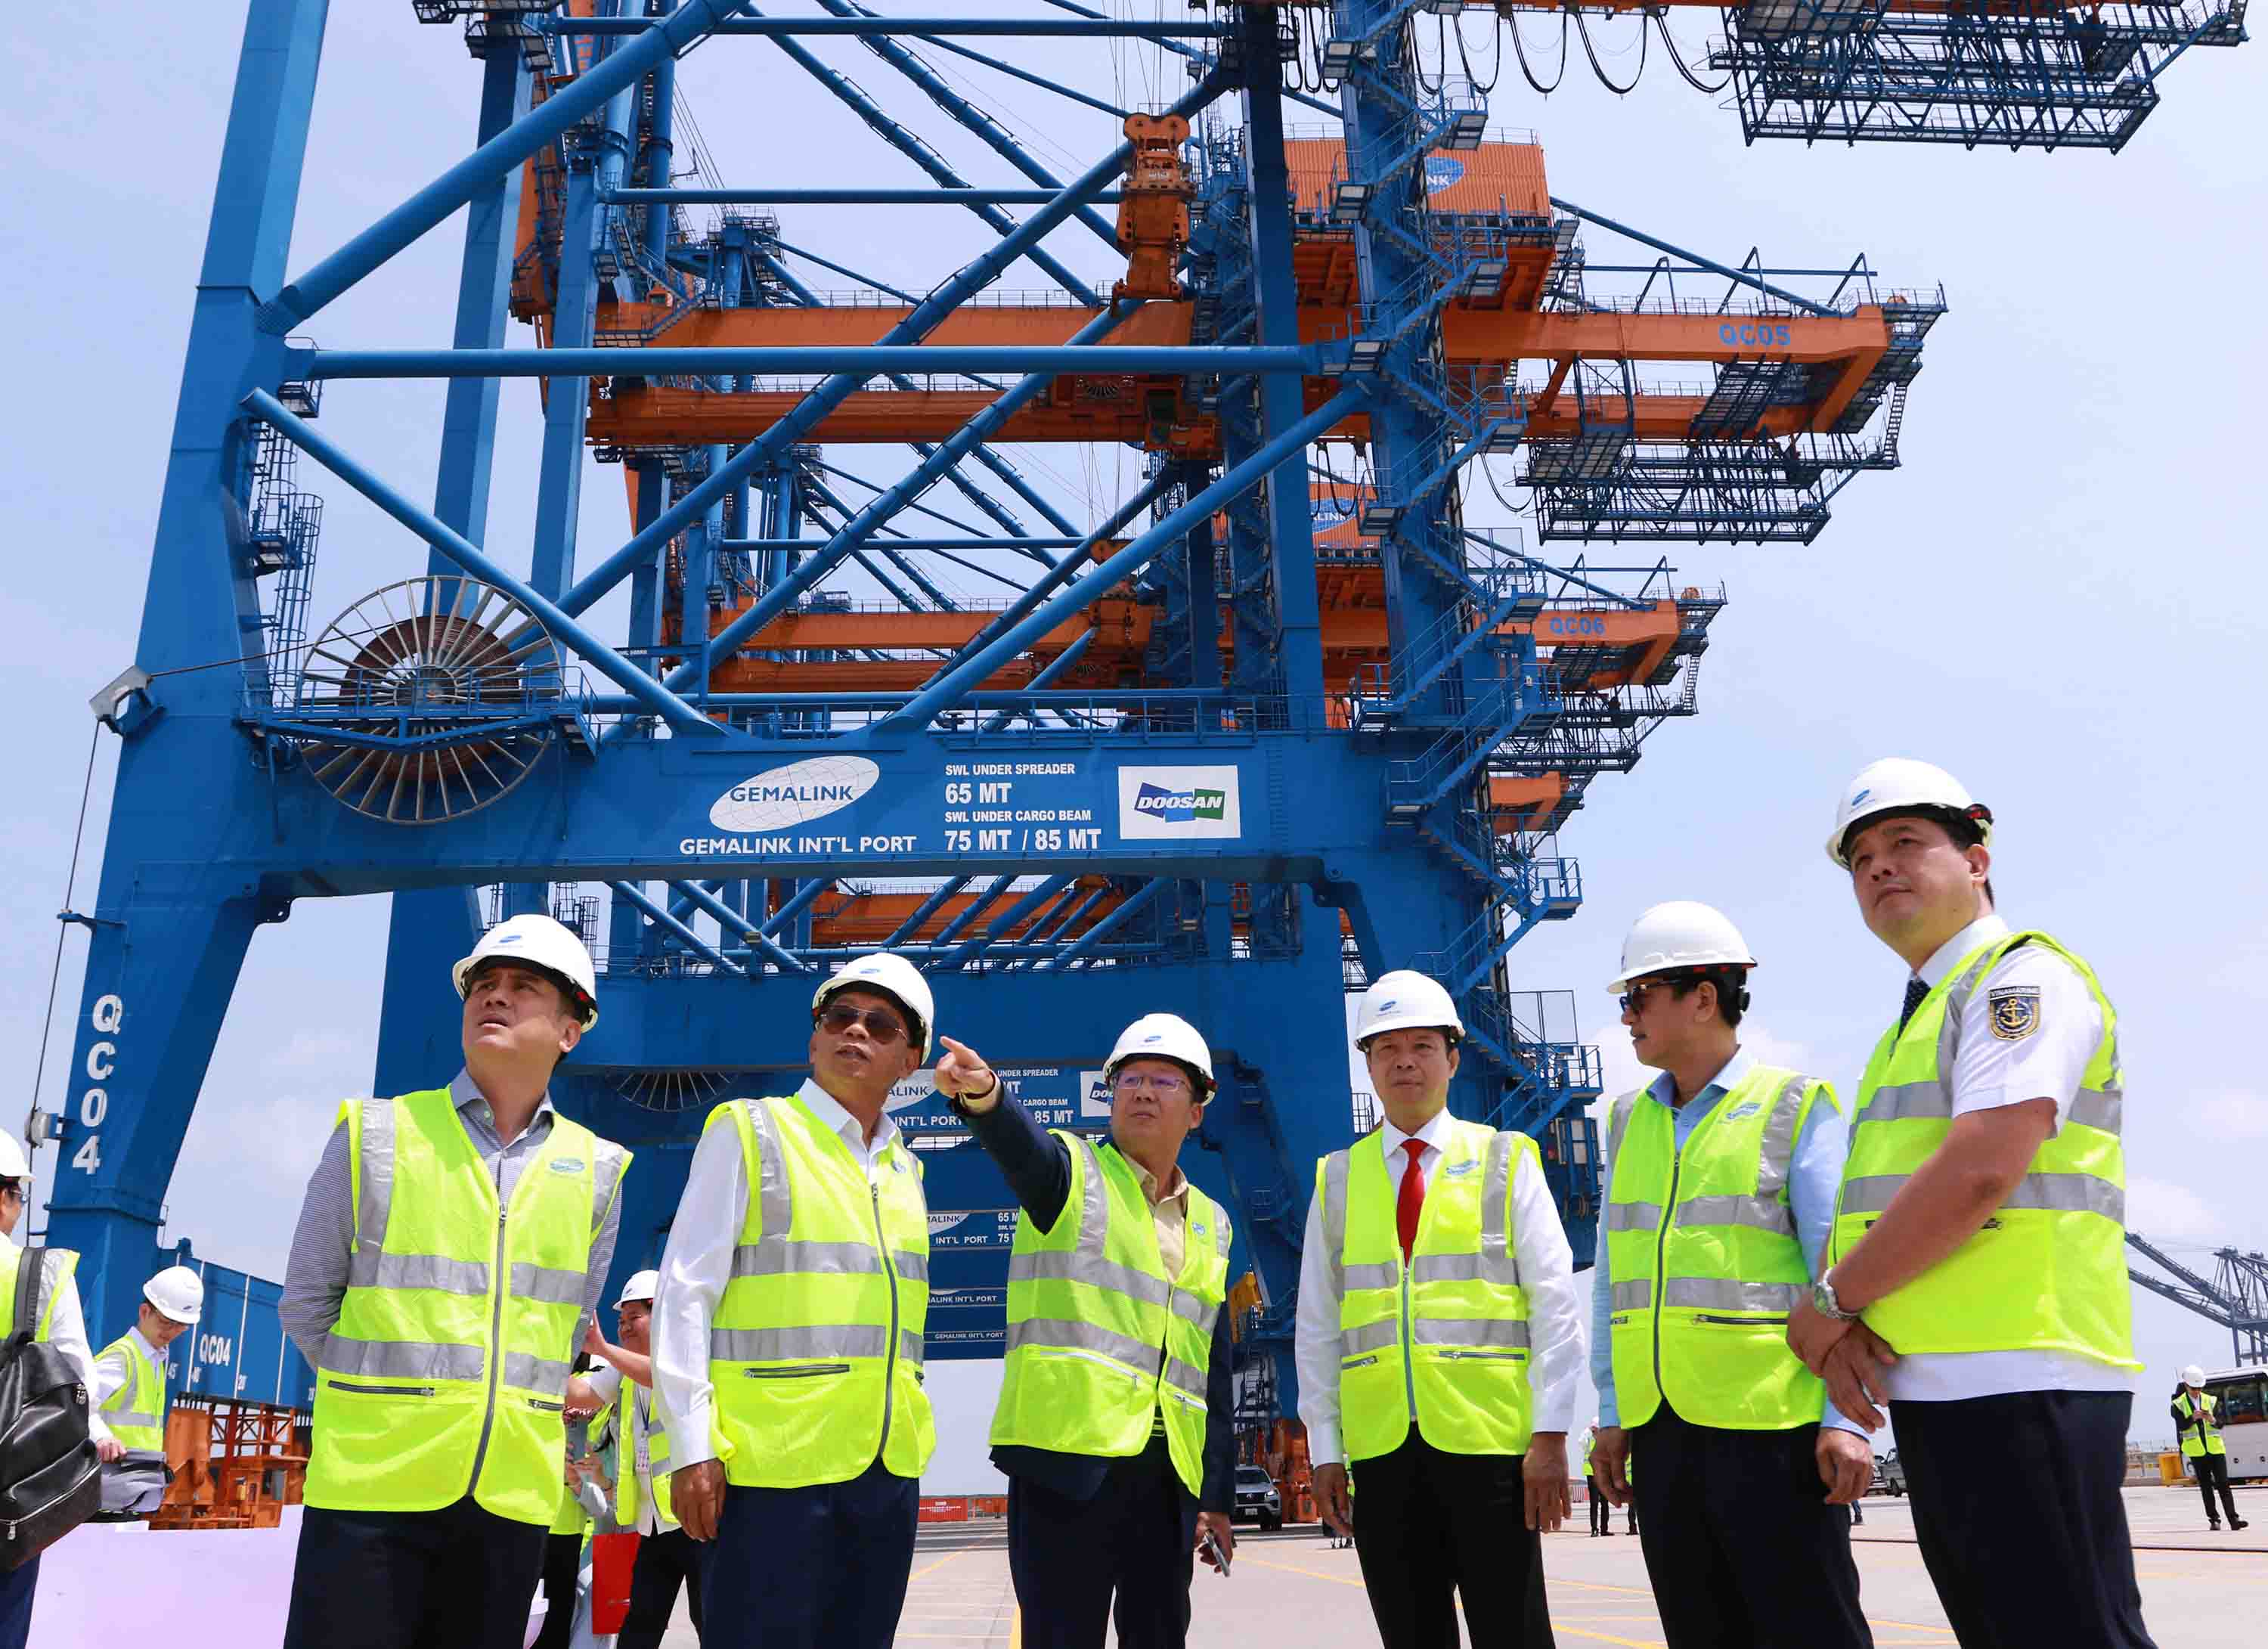 Ông Nguyễn Văn Thọ, Chủ tịch UBND tỉnh Bà Rịa-Vũng Tàu (người thứ 3, bên phải) nghe đại diện Cảng Quốc tế Gemalink giới thiệu về hệ thống cảng Gemalink (Ảnh: Lê Toàn).